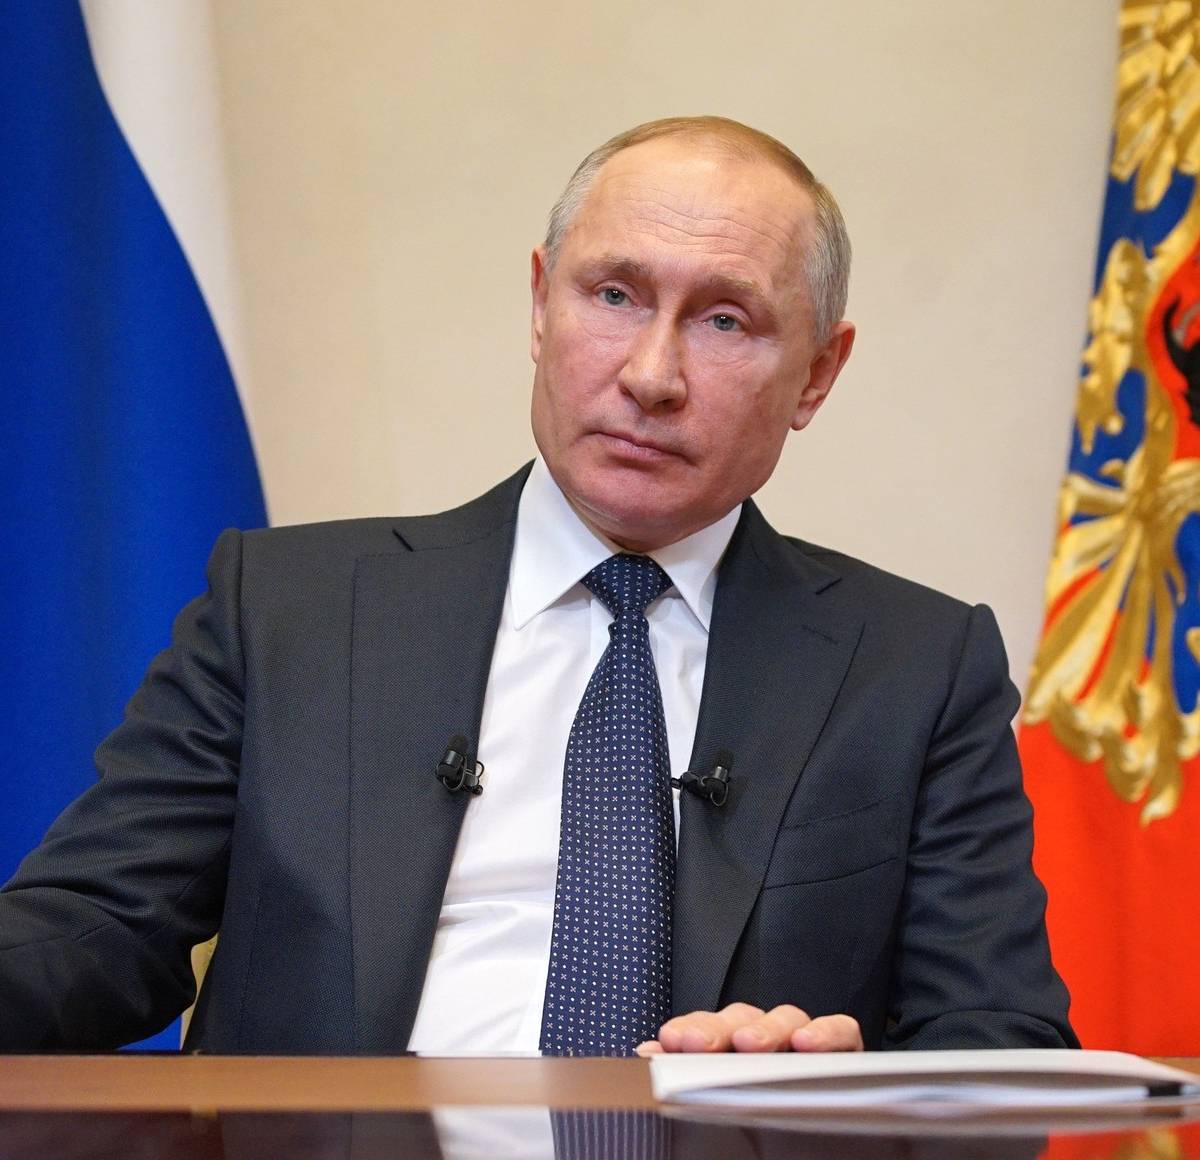 Вызов пандемии: Путин пытается избежать напряженности в обществе